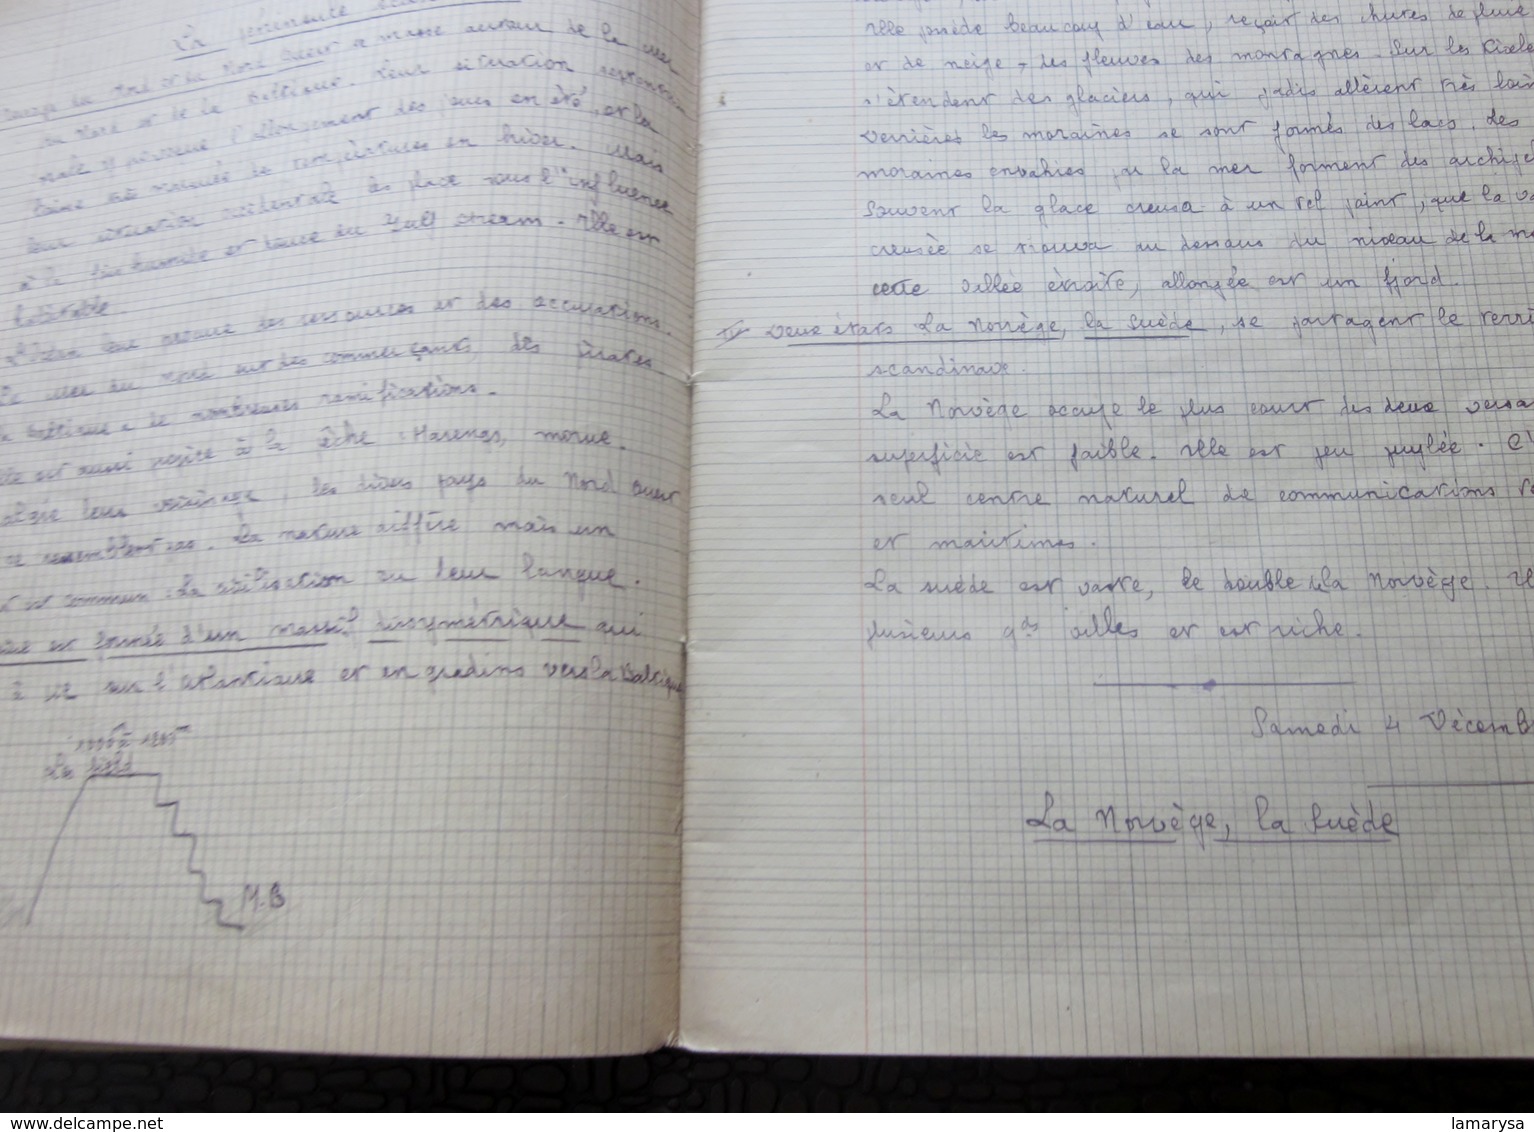 1948 Cahier Scolaire de Géographie Cartes déssinées écriture plume J. Roux Pce l'église Carcés Var Née 1935+Fiche photo